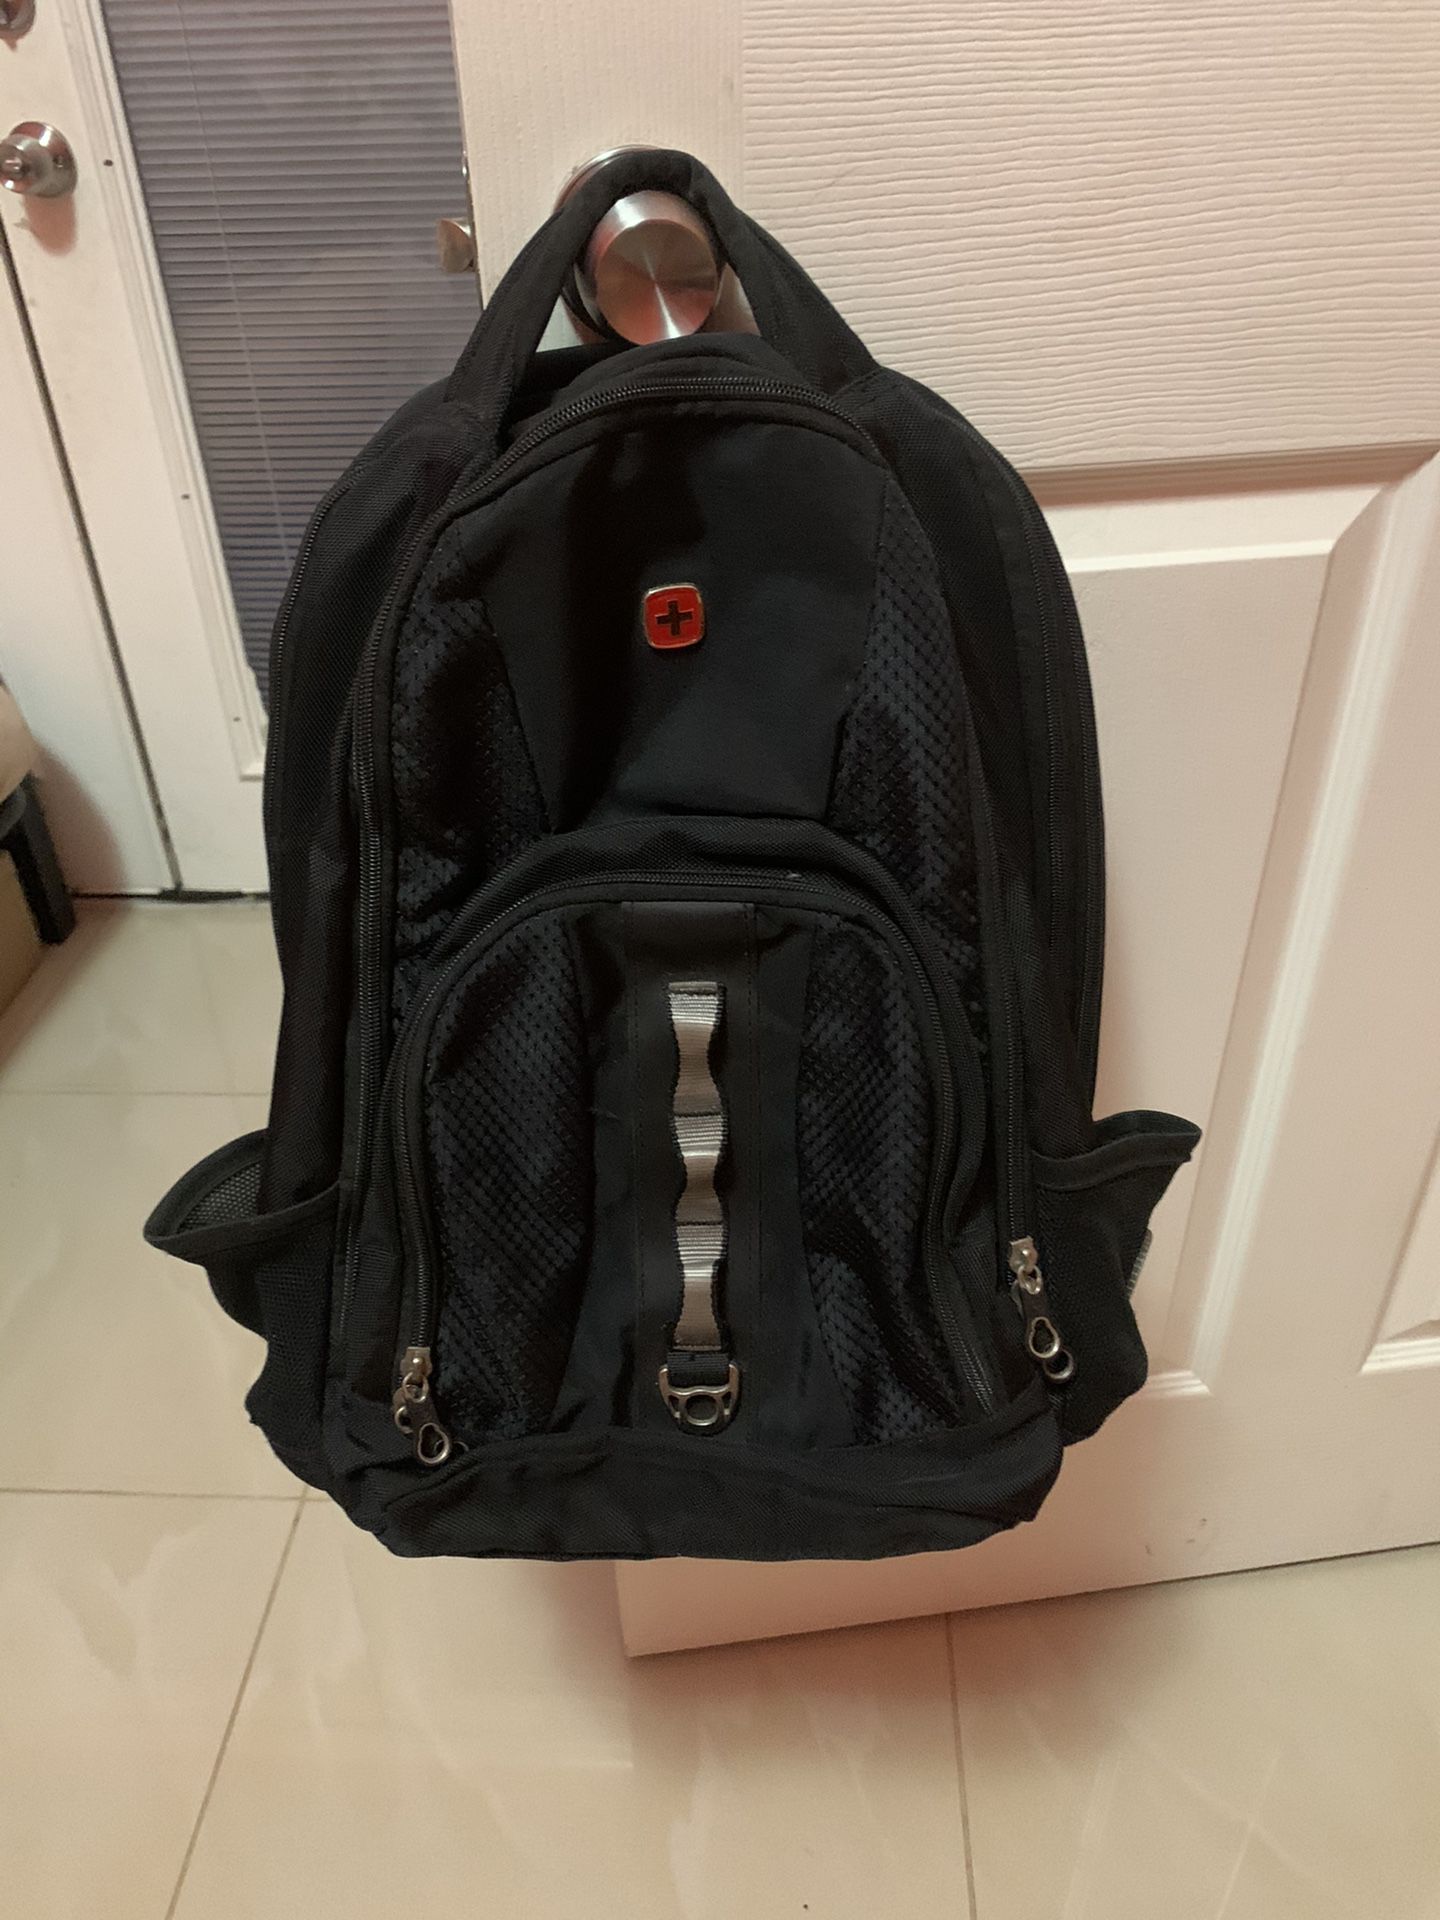 SwissGear ScanSmart TSA Laptop Backpack